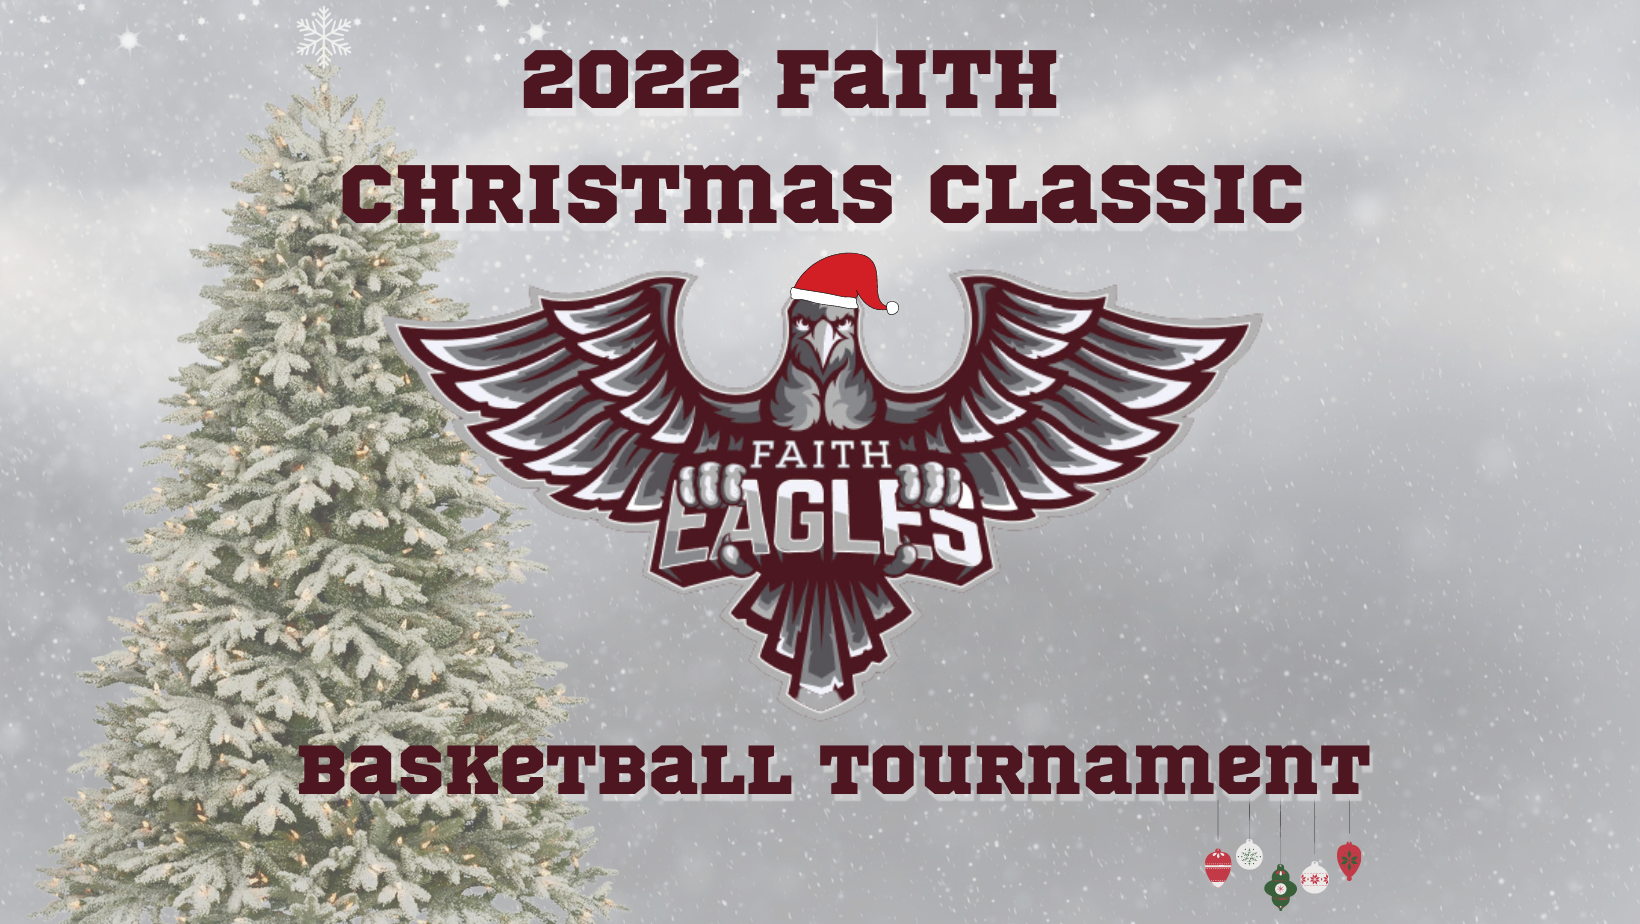 2022 Faith Christmas Classic